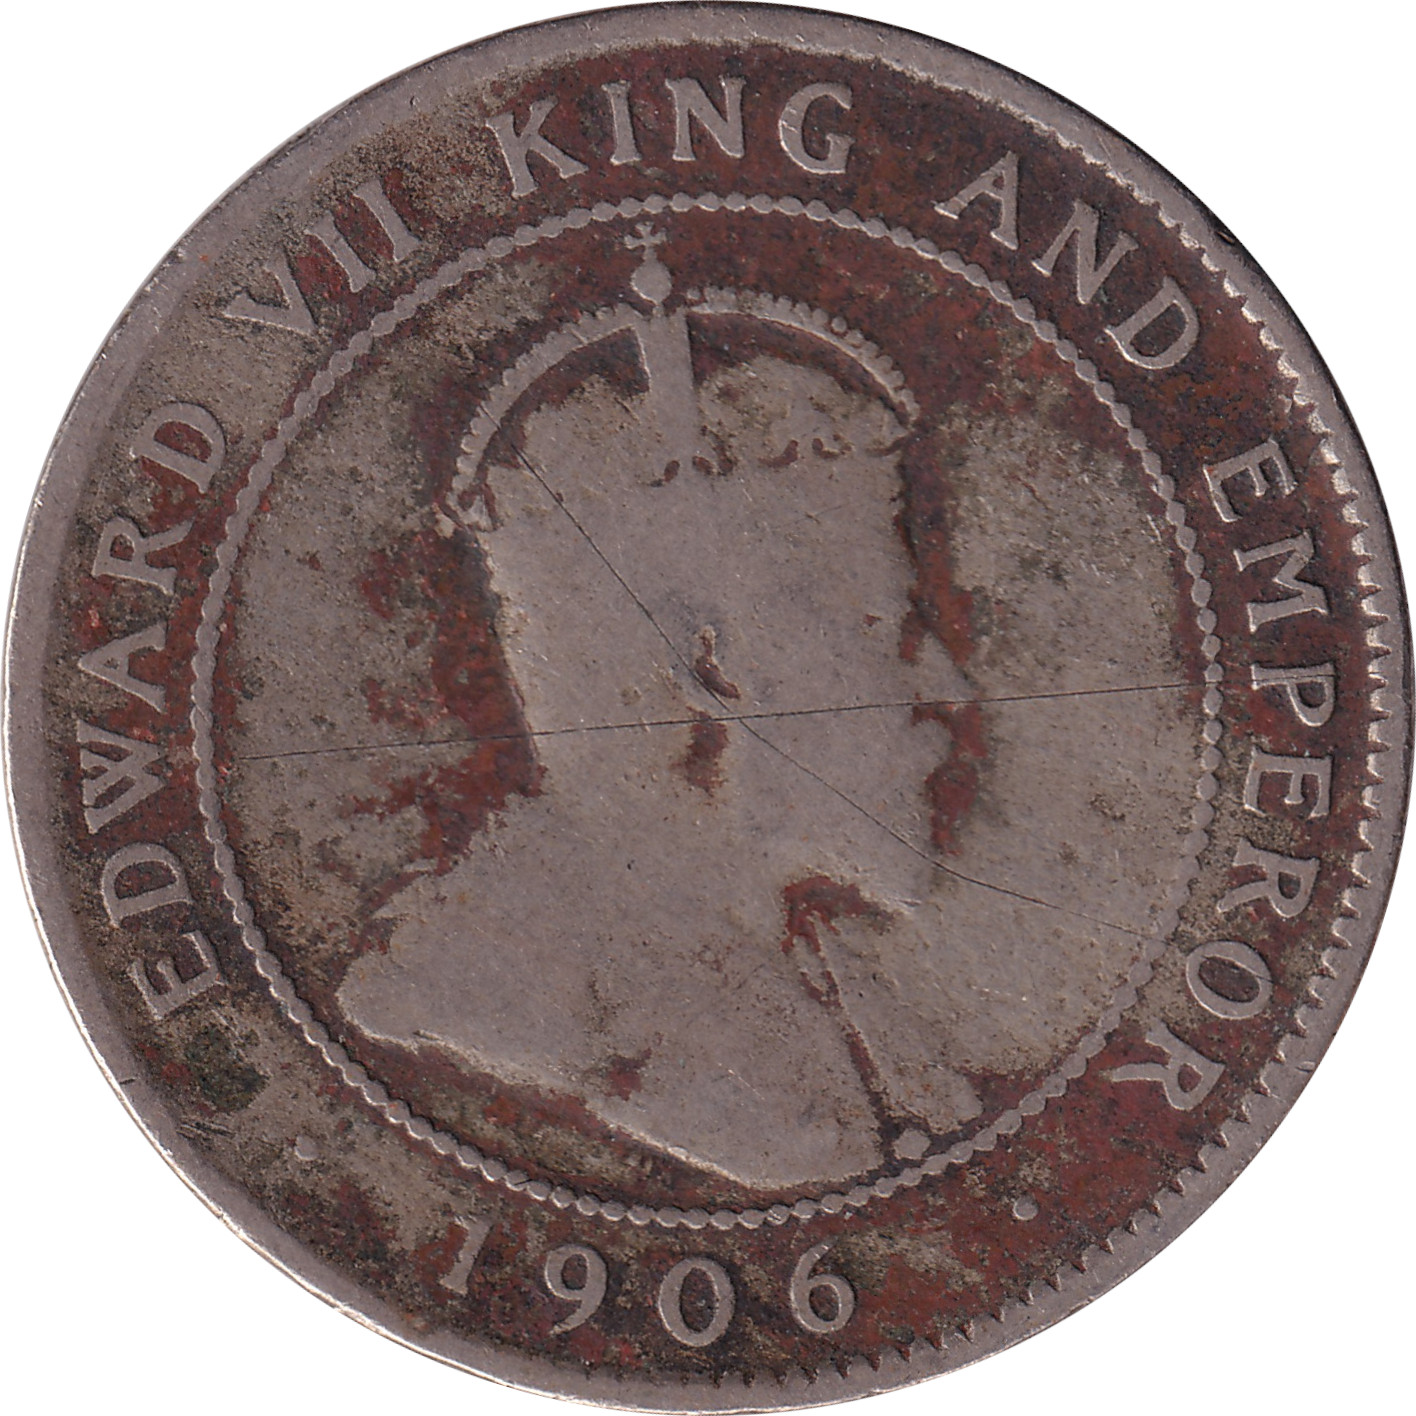 1 penny - Edward VII